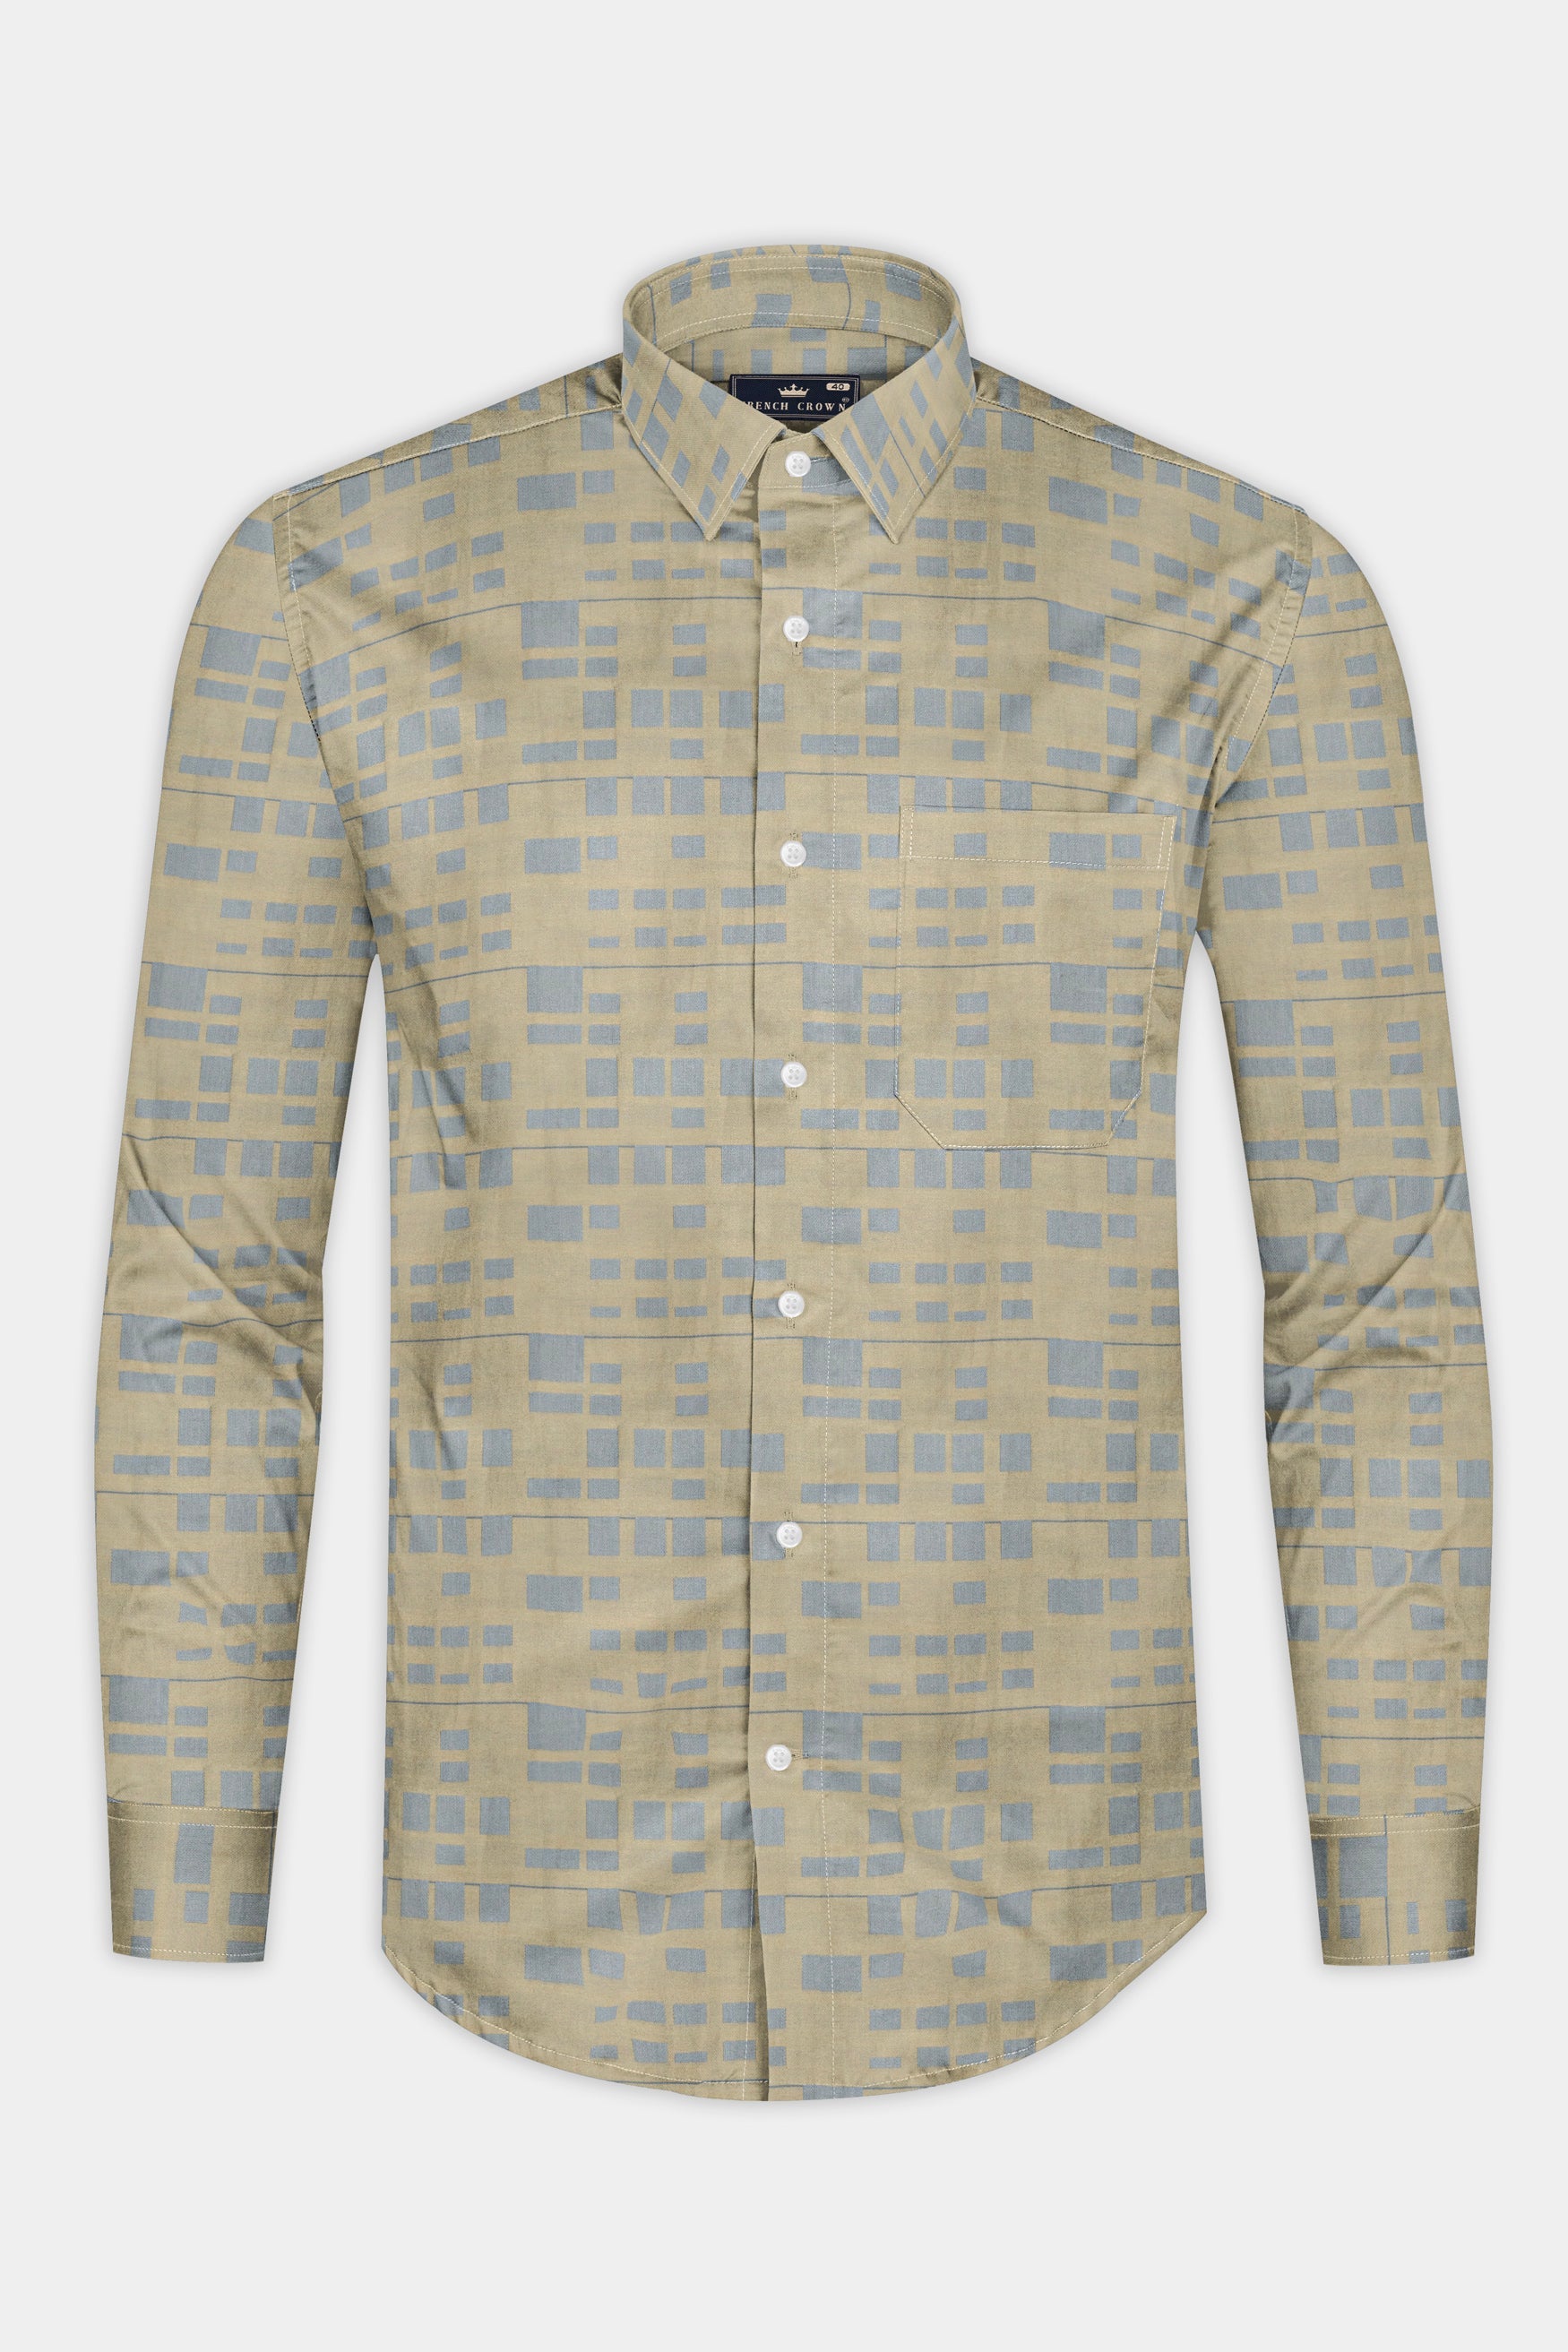 Mongoose brown with Gunsmoke Gray Block printed Jacquard shirt